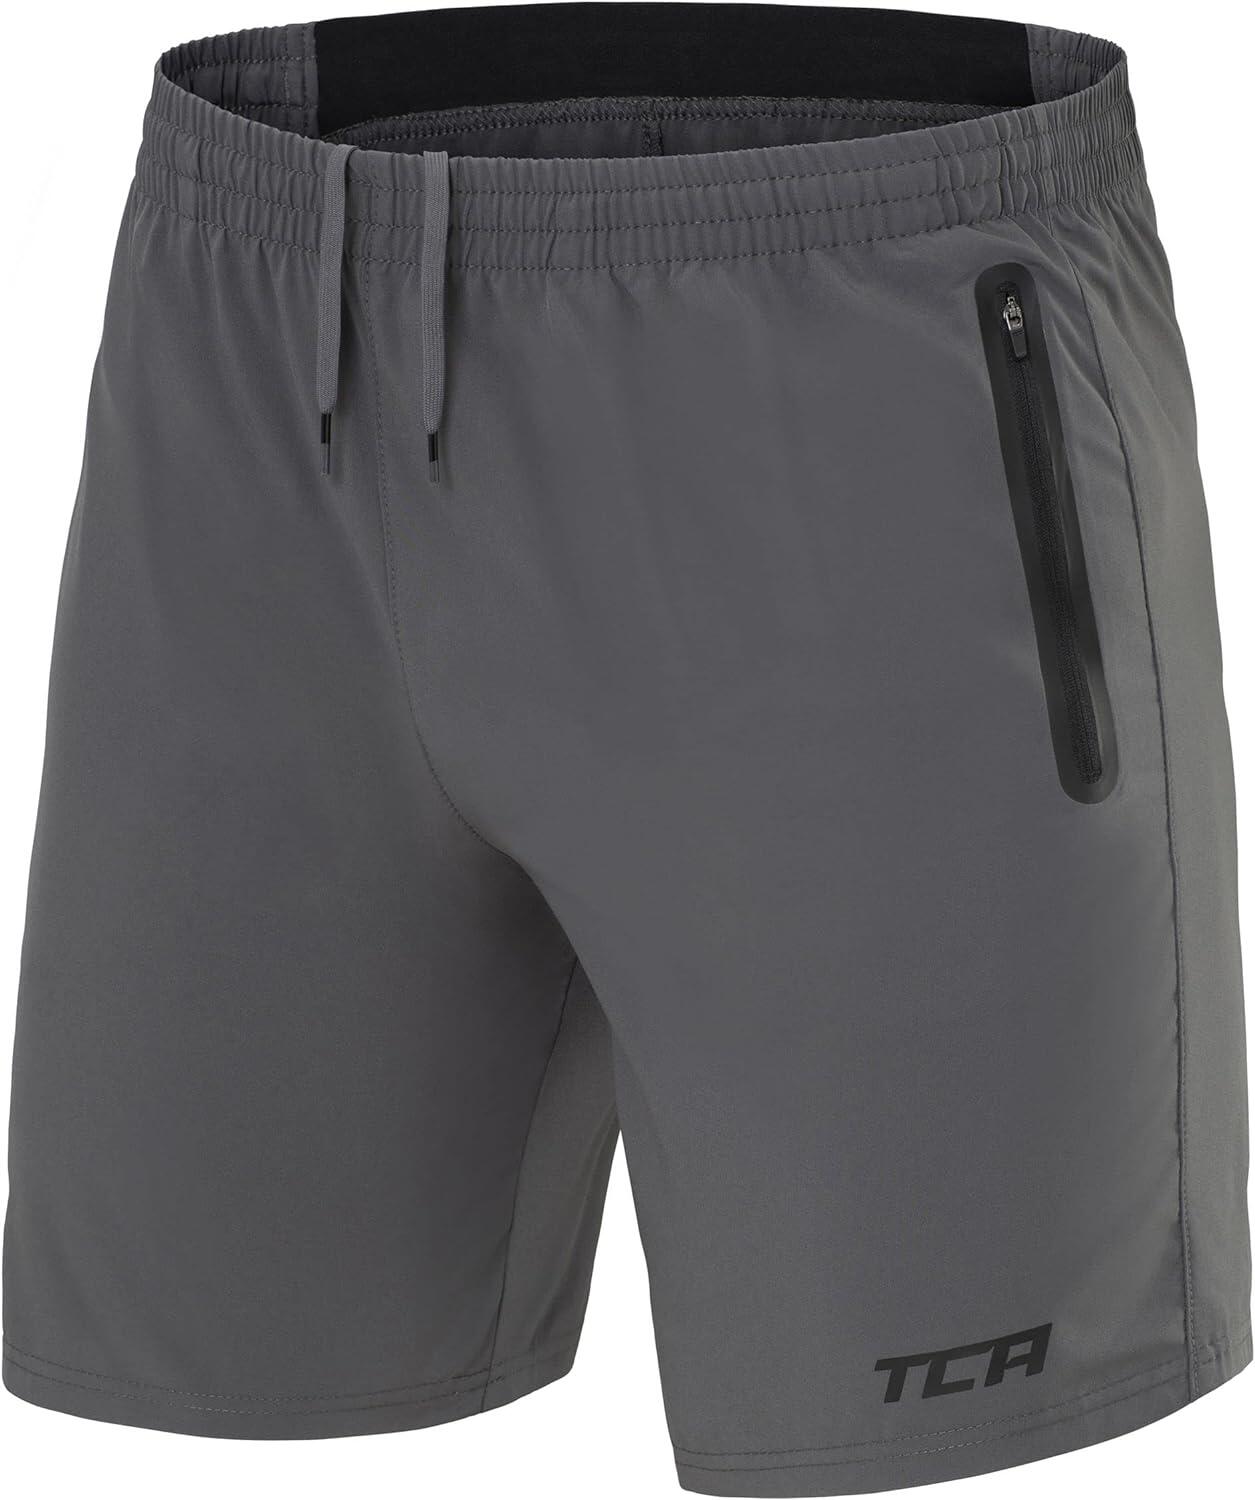 Men's Elite Tech Lightweight Running Shorts with Zip Pockets - Asphalt 1/6